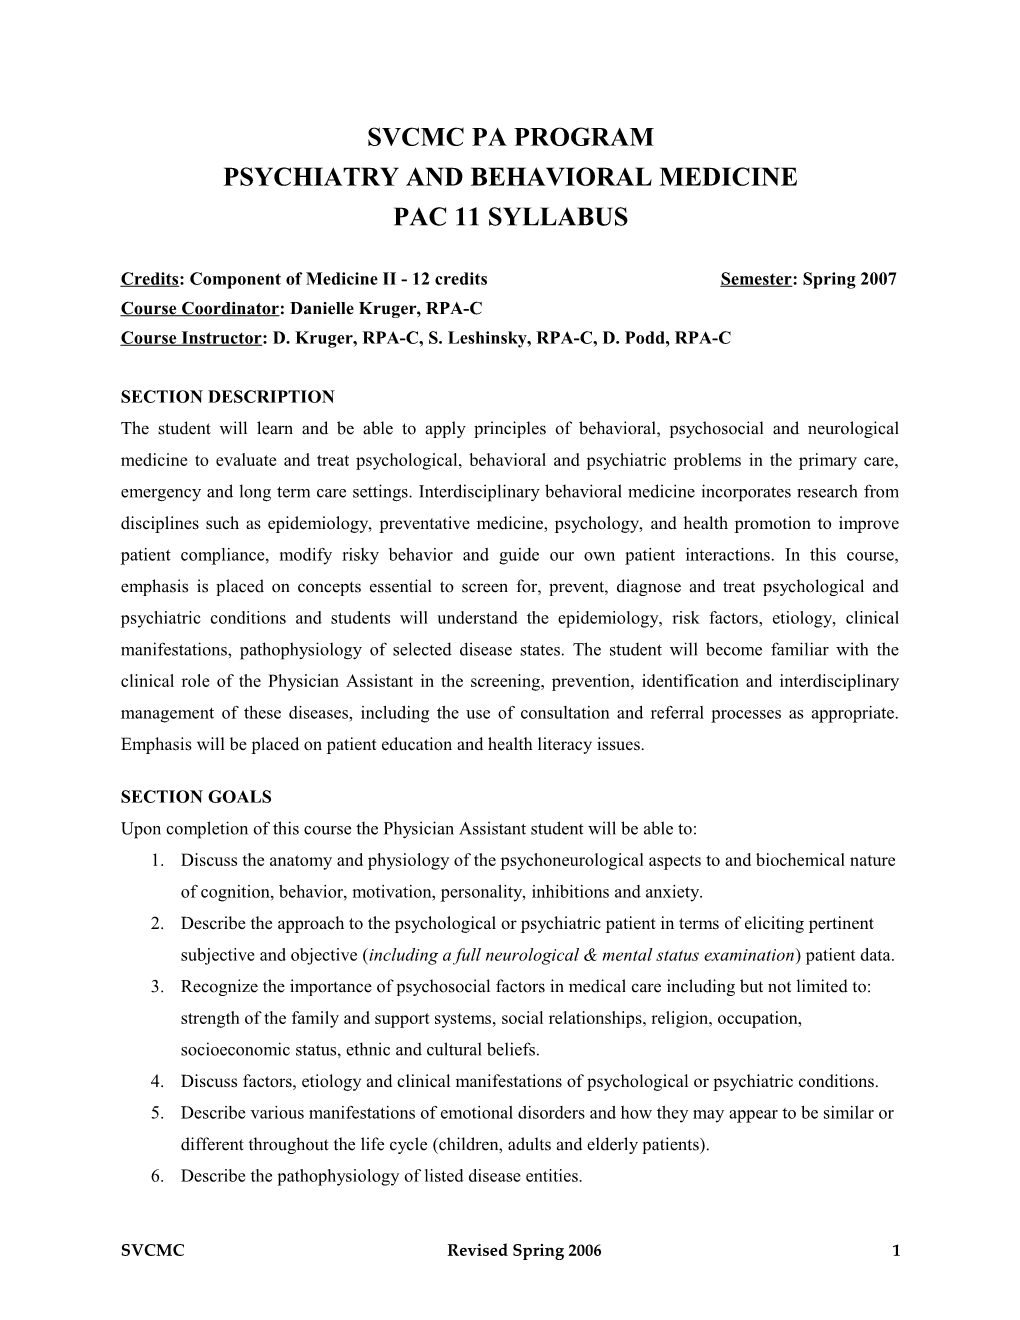 Psychiatry and Behavioral Medicine